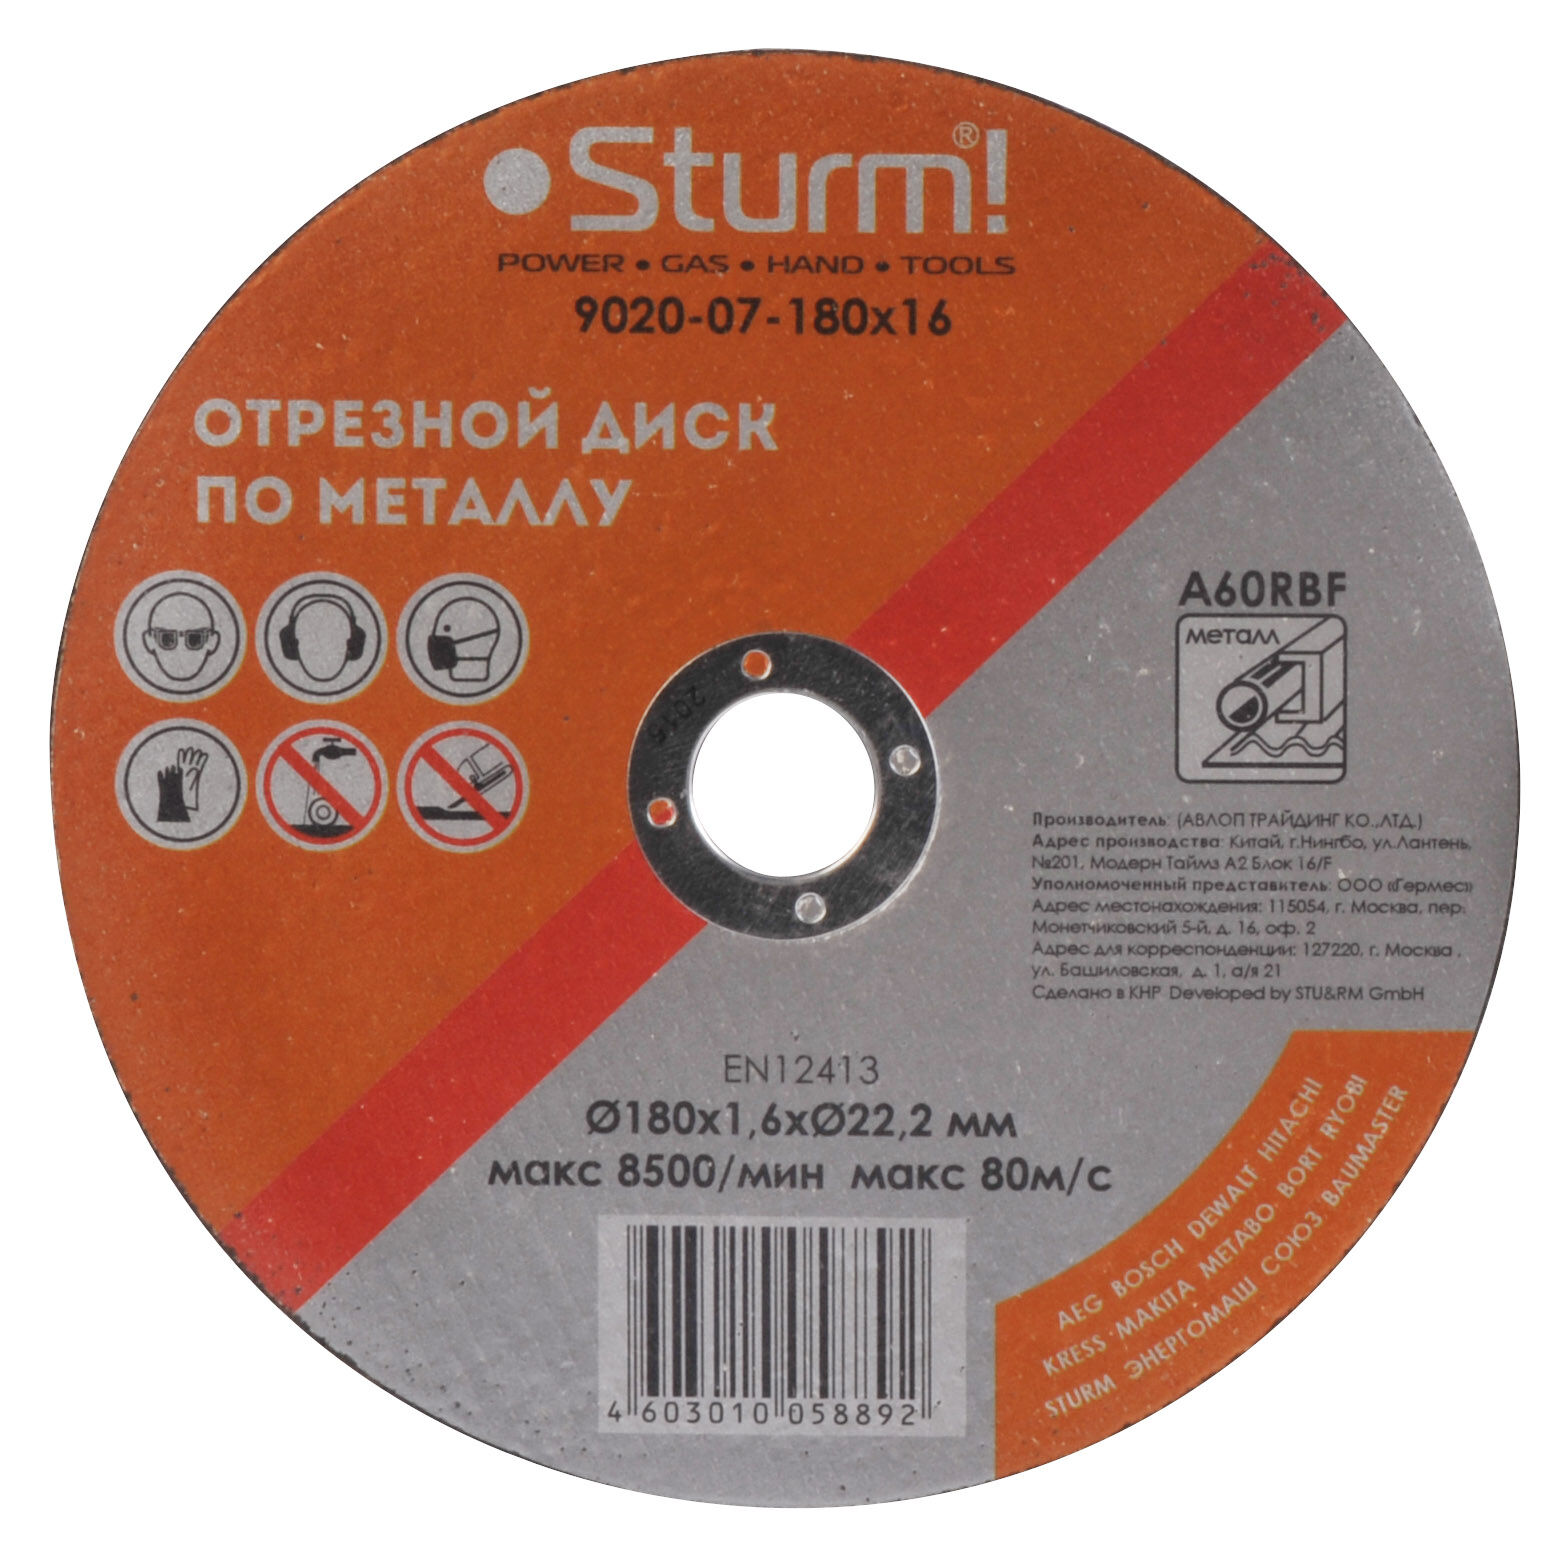 Отрезной диск по металлу Sturm 9020-07-180x16 Sturm!